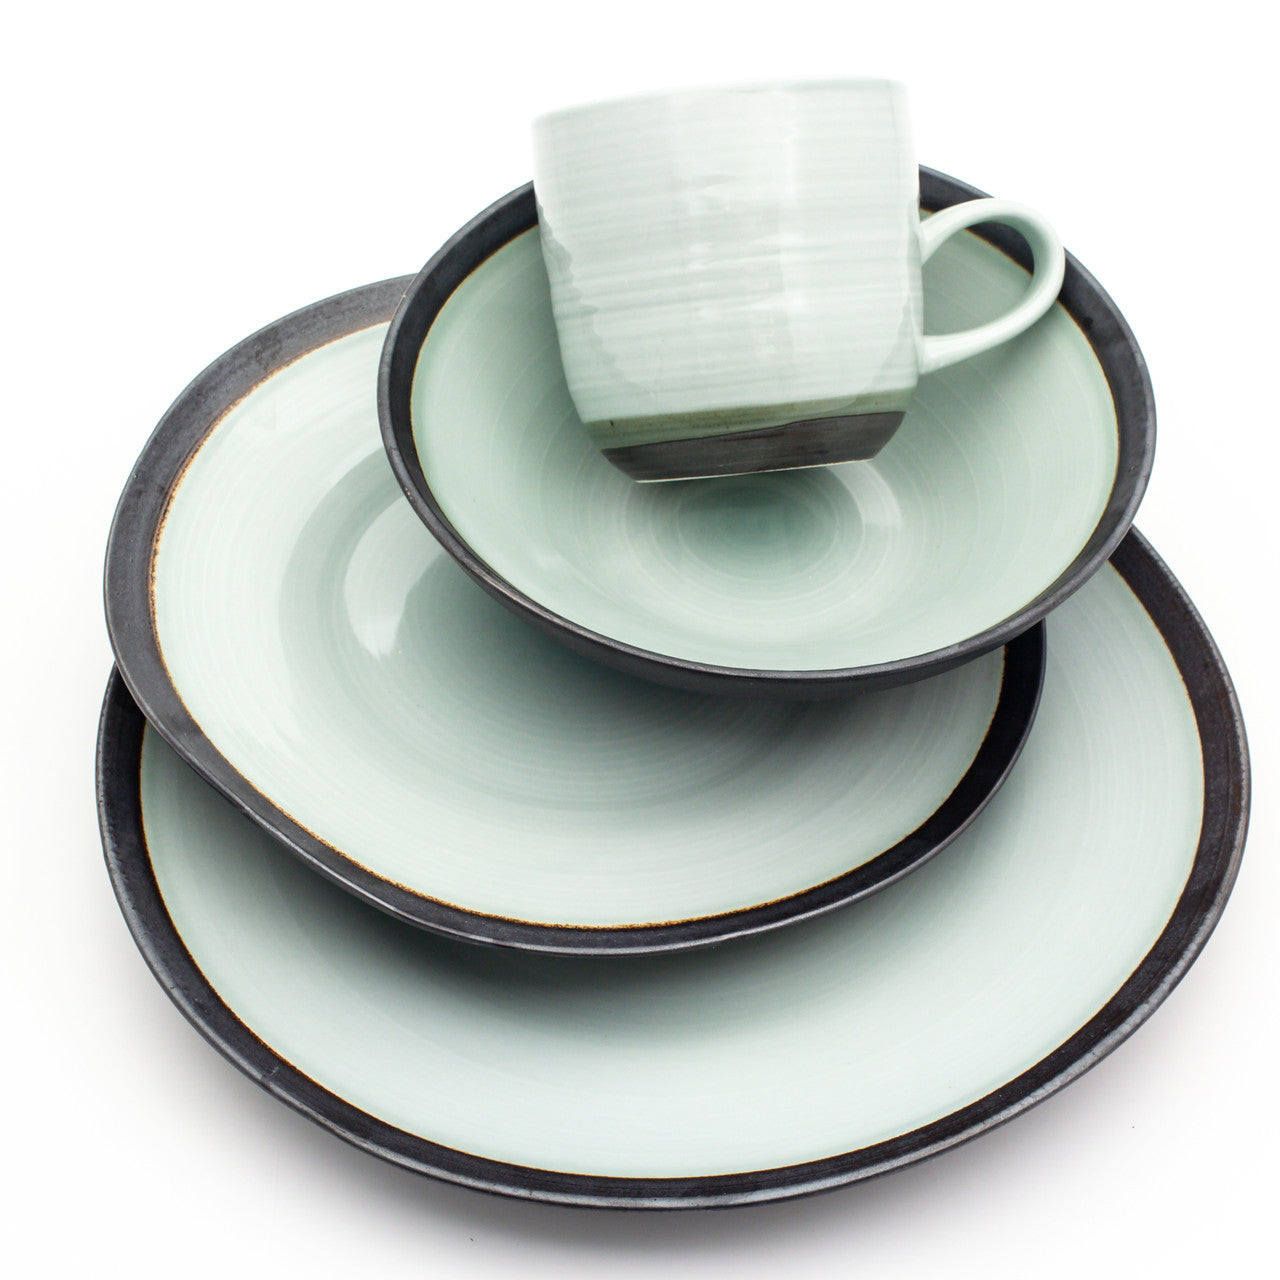 Diana 16 Piece Dinnerware Set, Service for 4 - Euro Ceramica 